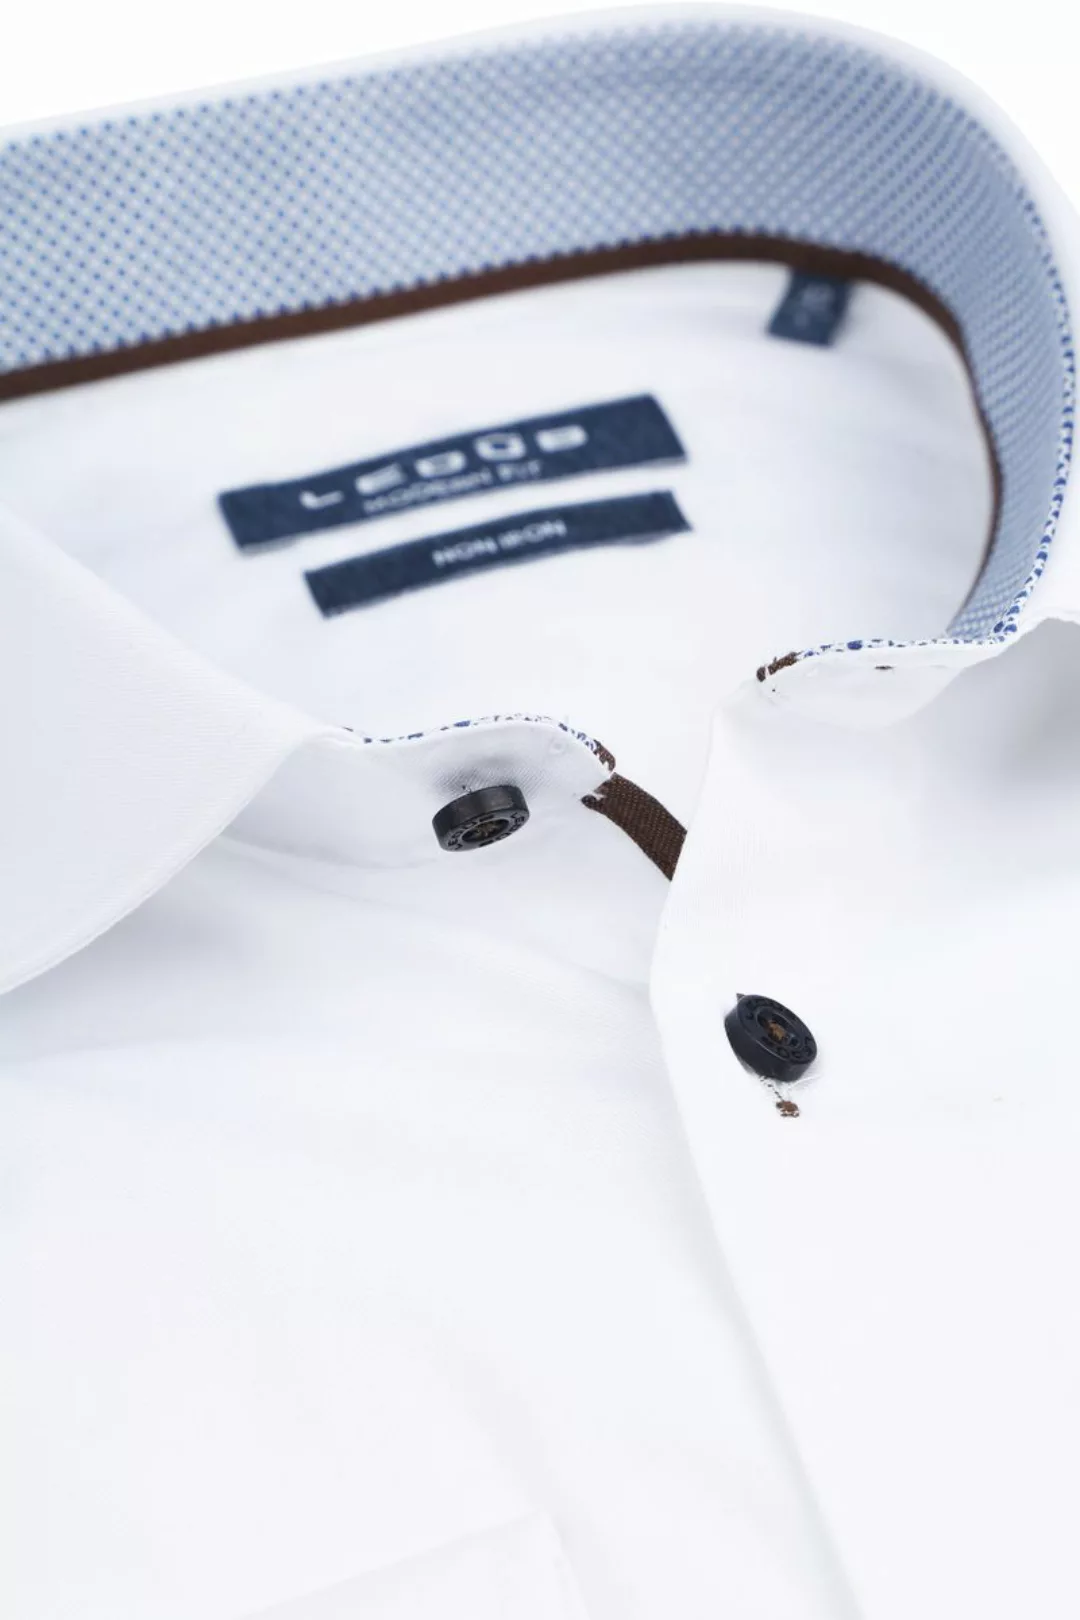 Ledub Hemd Bügelfrei weiß - Größe 39 günstig online kaufen